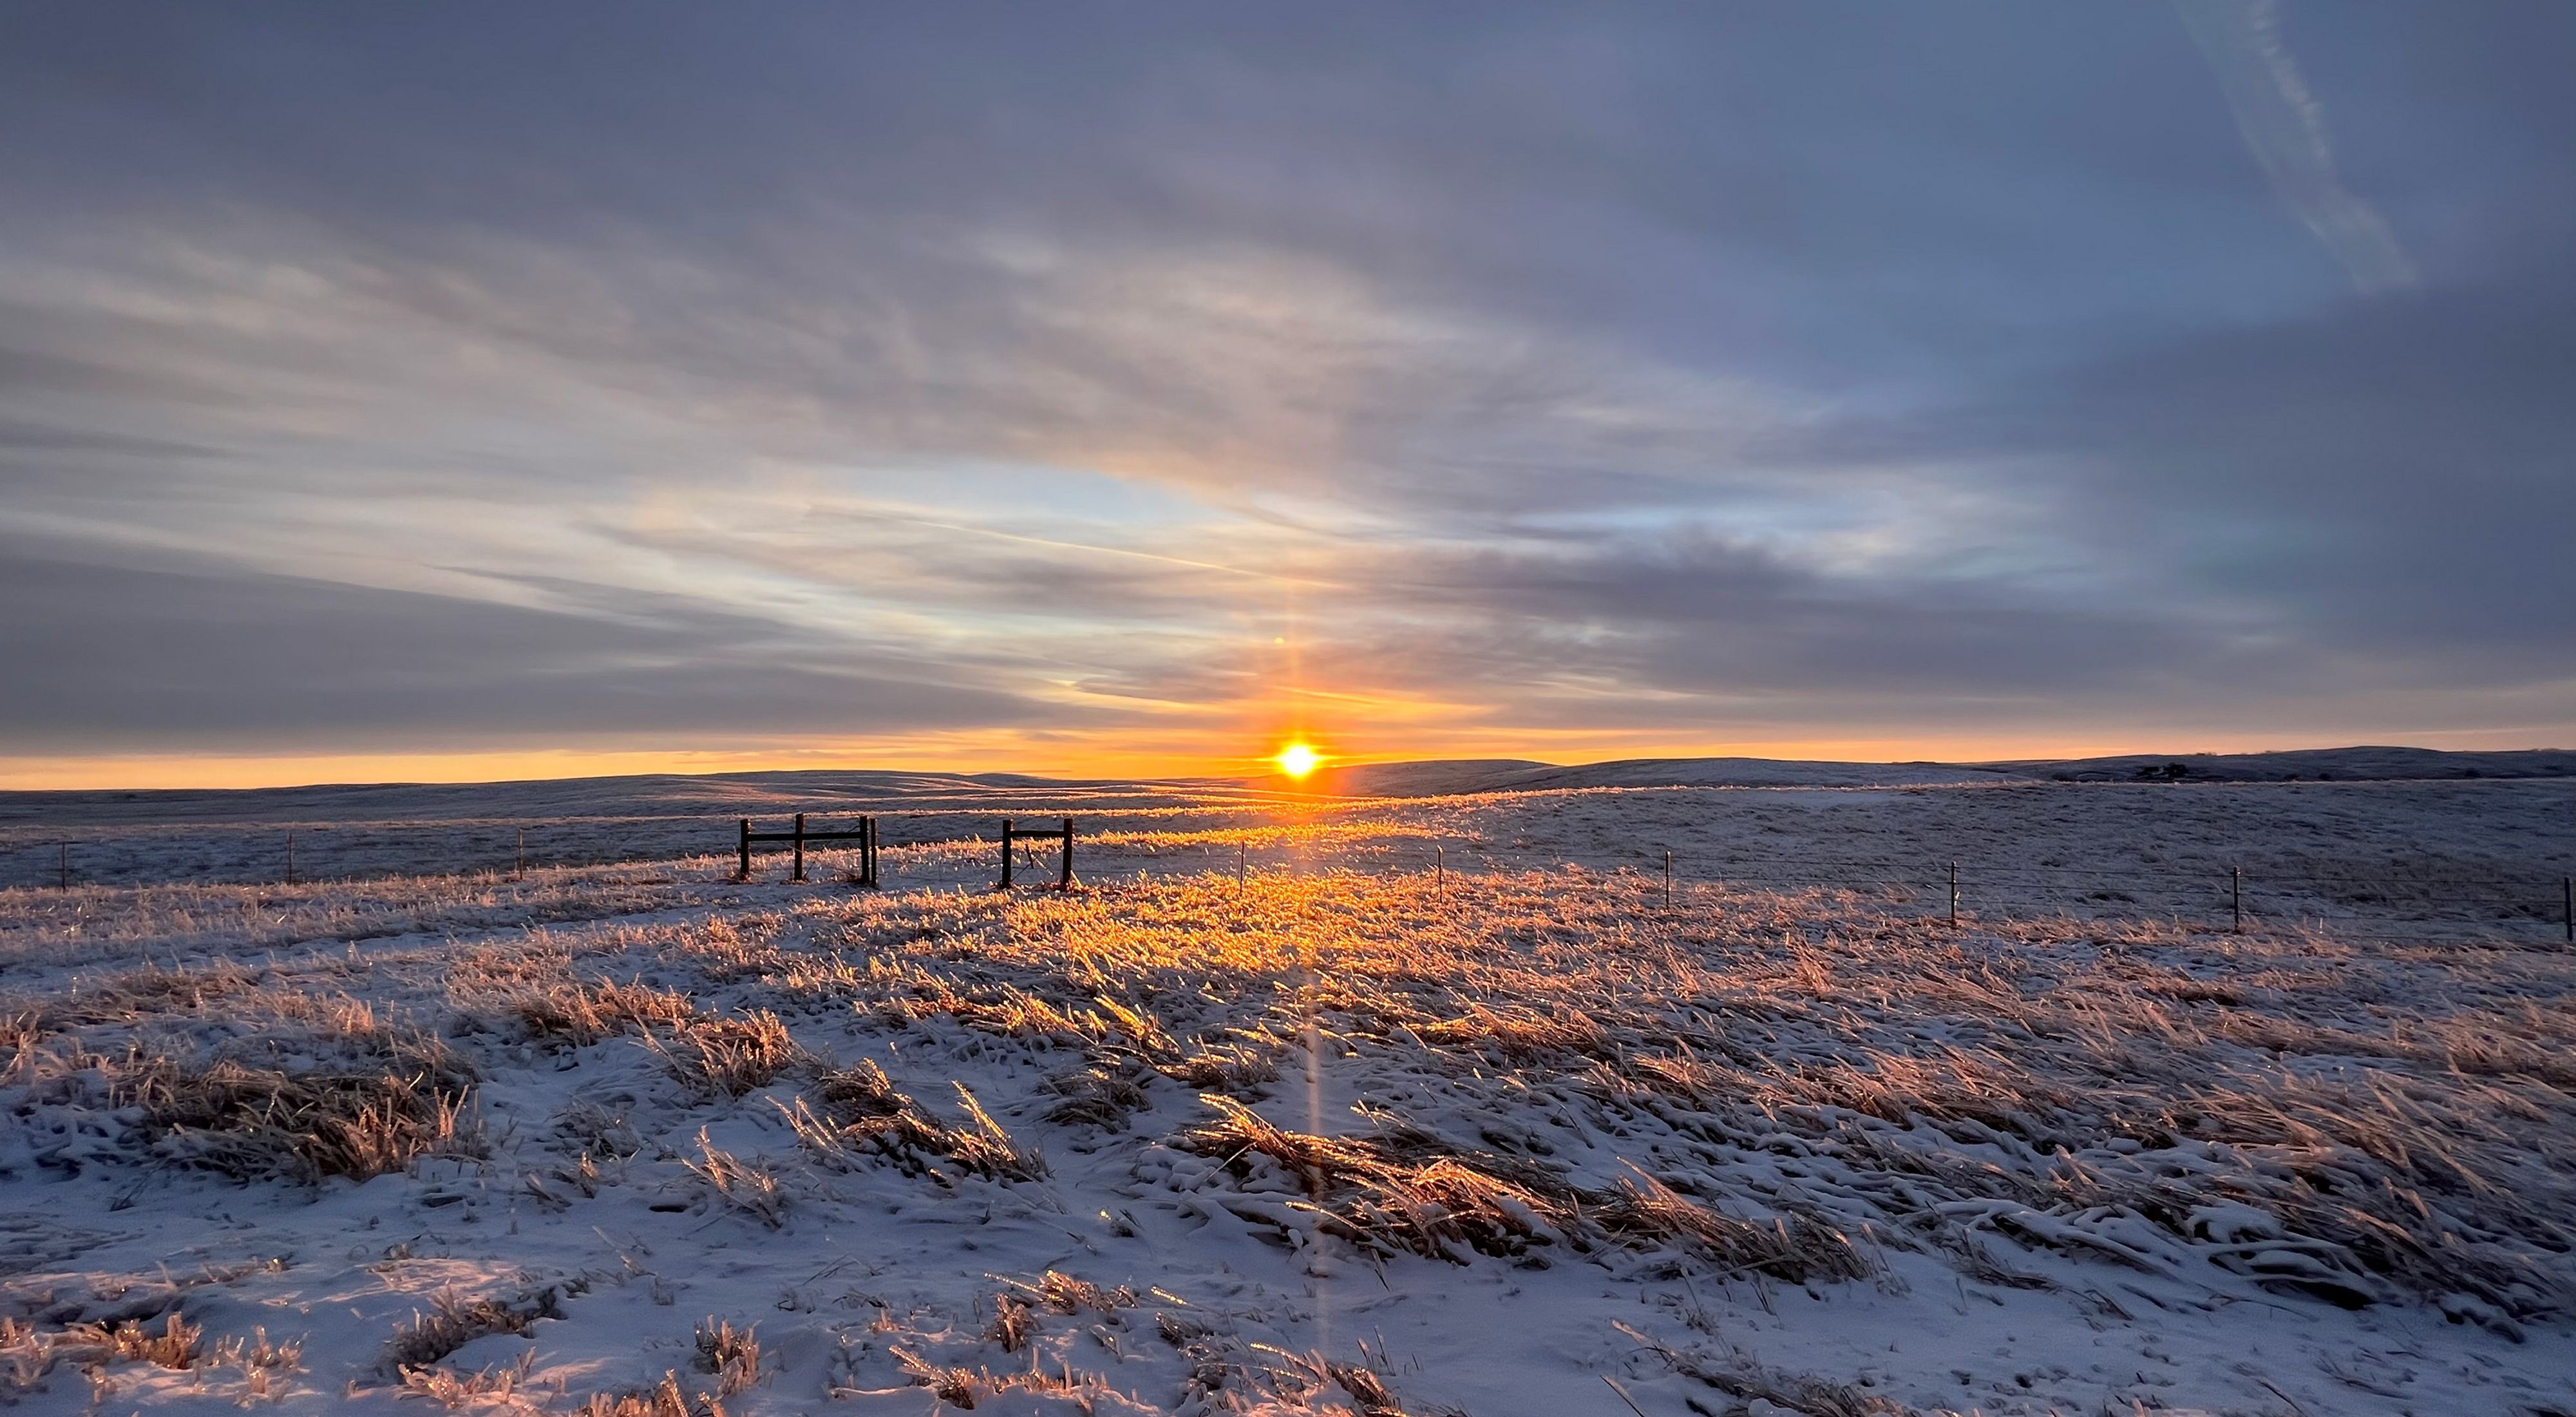 snowy Ordway Prairie under a golden sunrise.